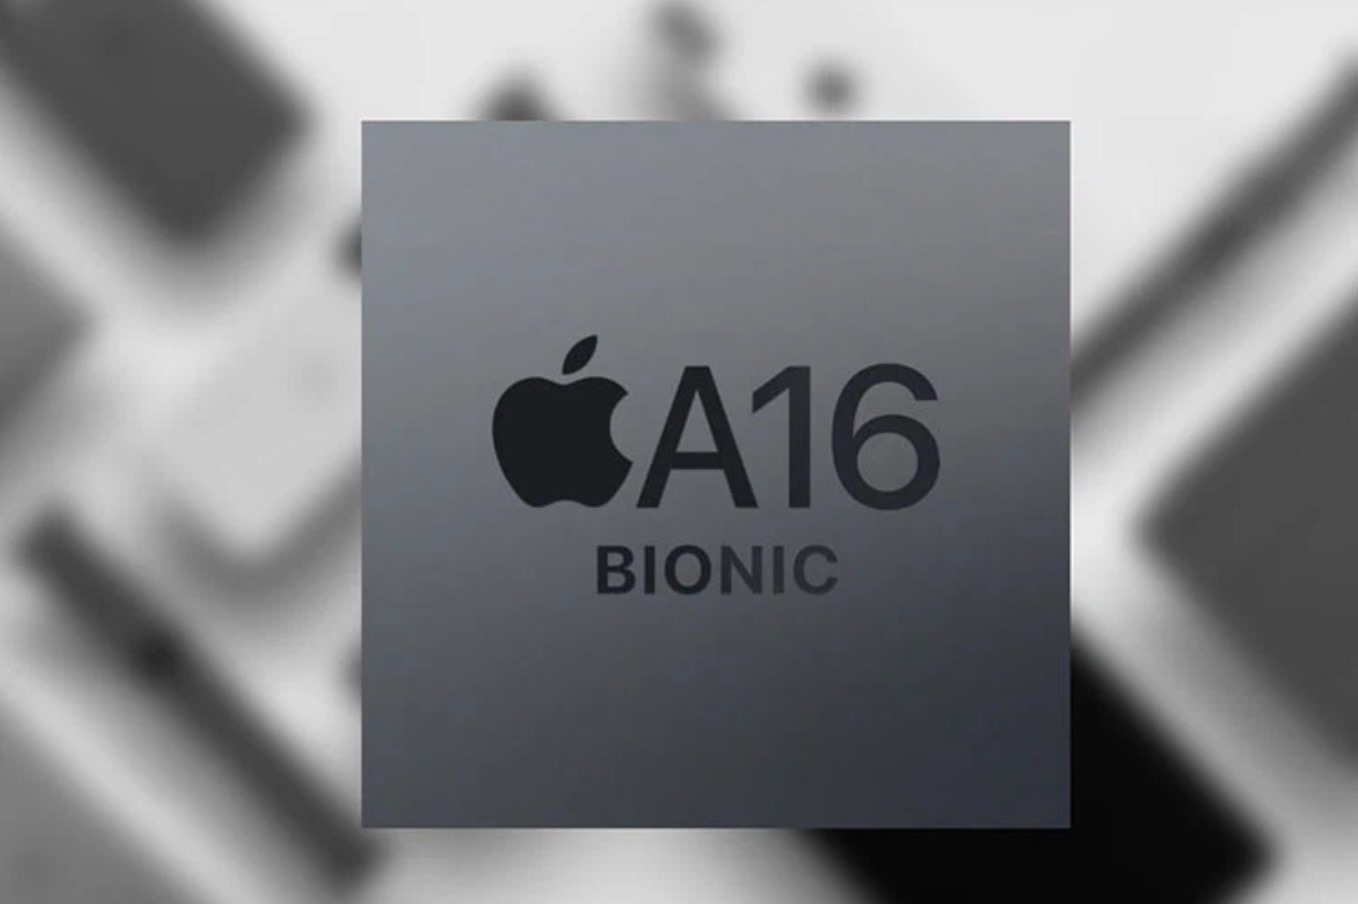 Chip A16 Bionic được dự đoán là lựa chọn của Apple cho dòng iPhone 14 sắp ra mắt. Ảnh: Apple